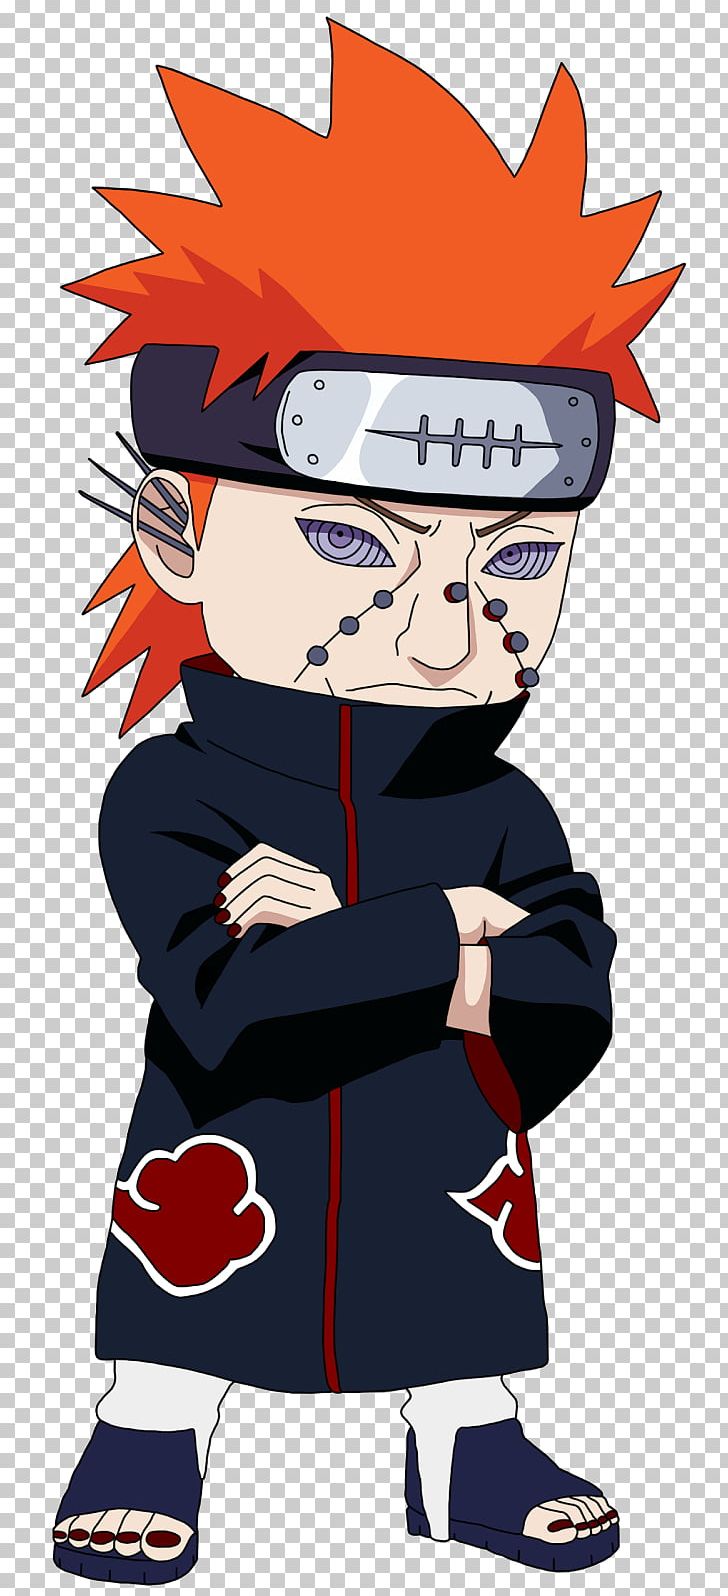 Pain Naruto Uzumaki Deidara Itachi Uchiha Akatsuki PNG, Clipart, Akatsuki, Anime, Art, Cartoon, Chibi Free PNG Download